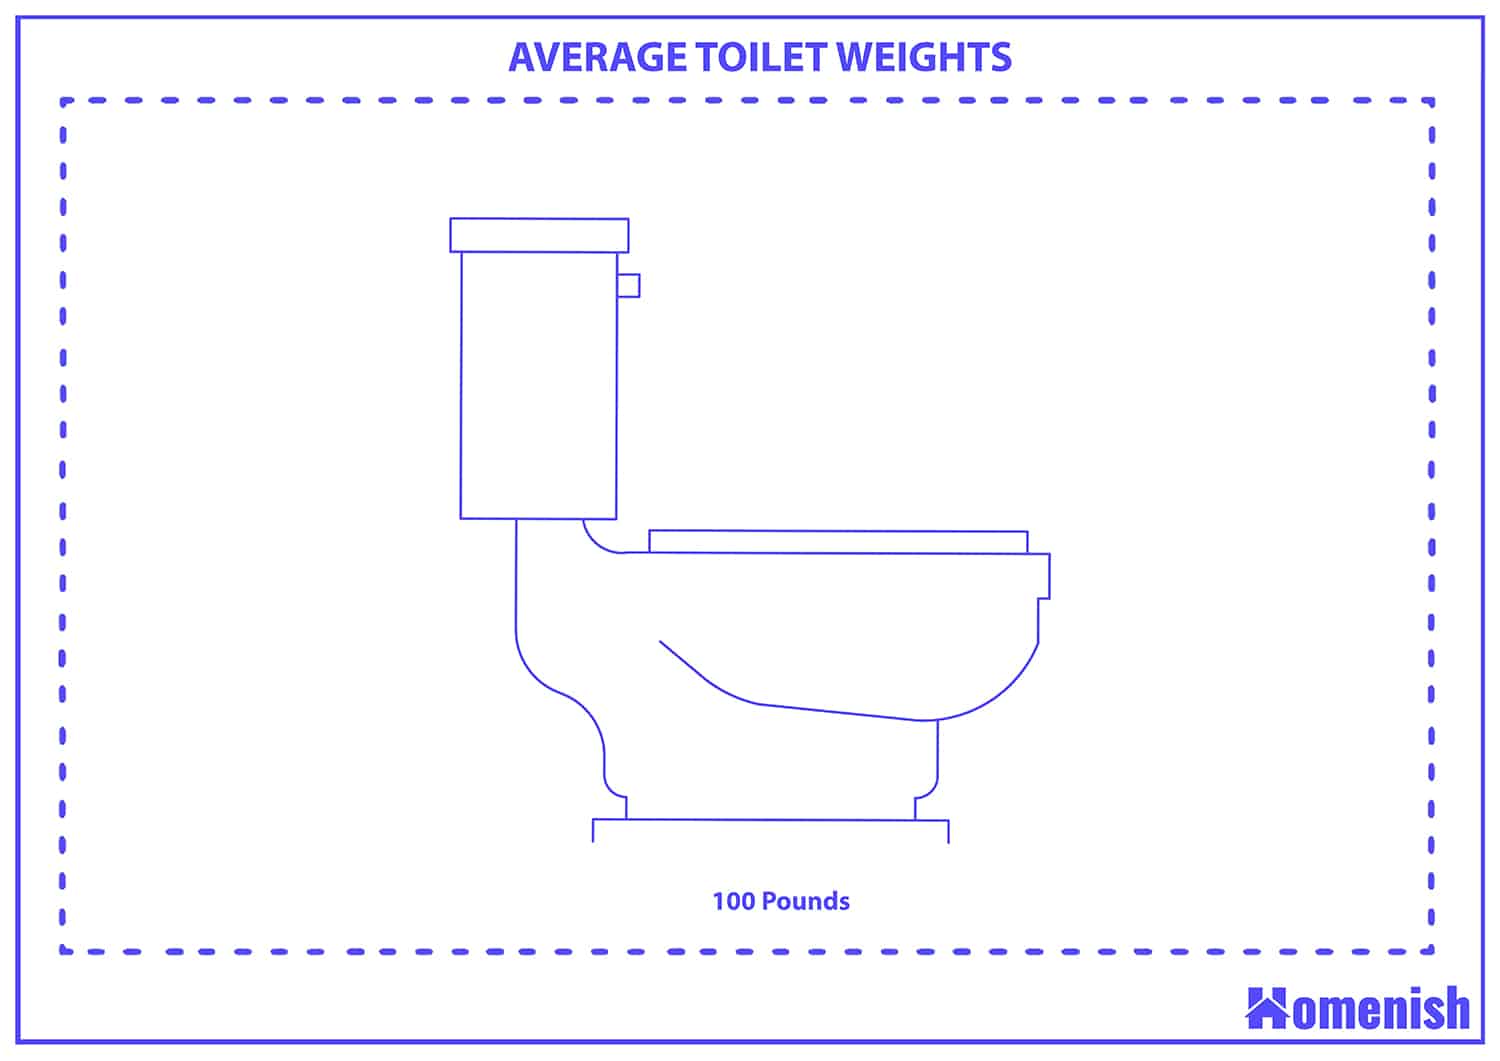 Average toilet weights